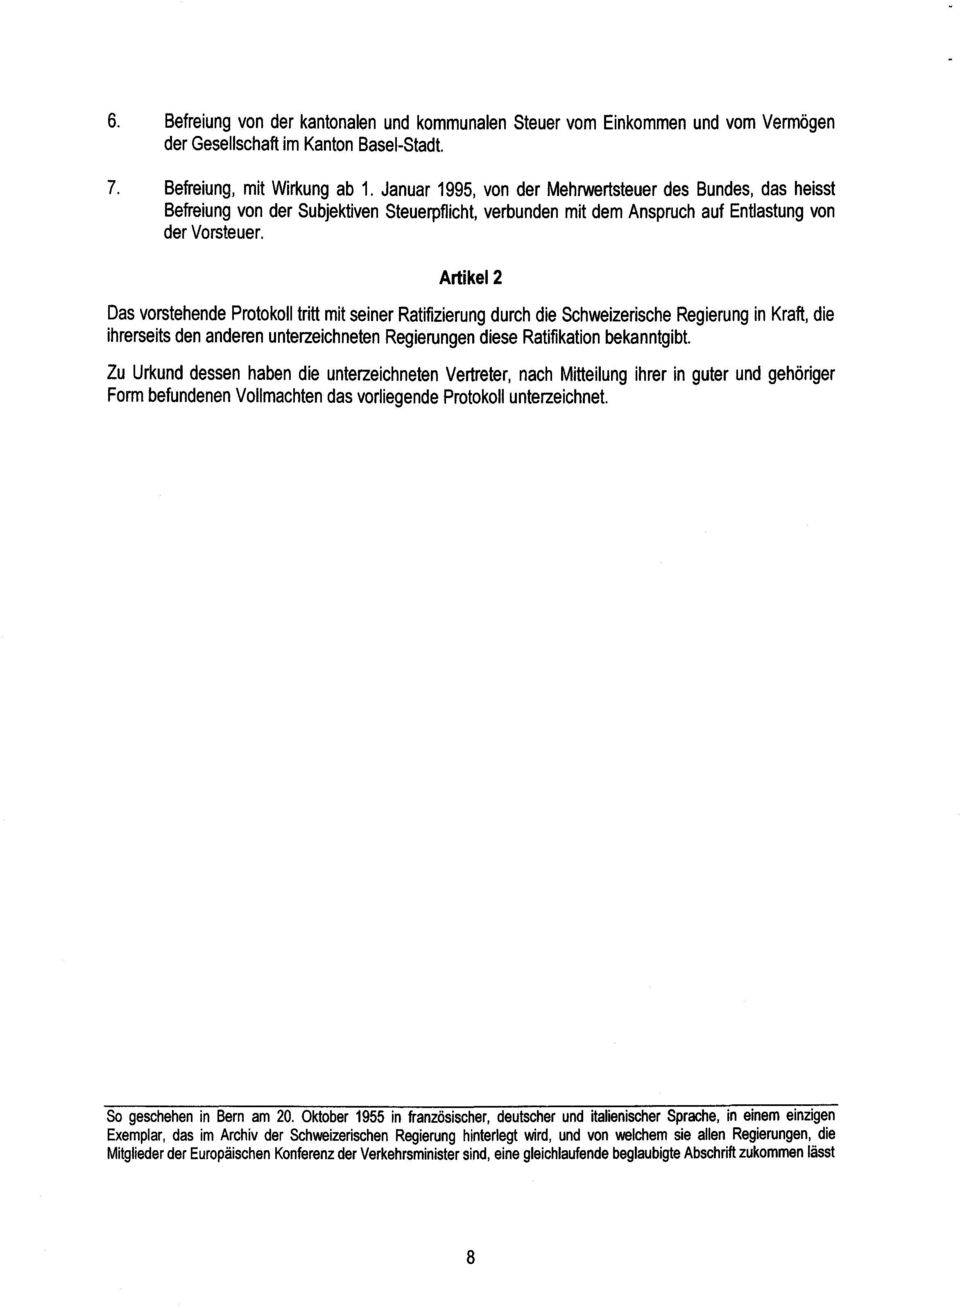 Artikel 2 Das vorstehende Protokoll tritt mit seiner Ratifizierung durch die Schweizerische Regierung in Kraft, di e ihrerseits den anderen unterzeichneten Regierungen diese Ratifikation bekanntgibt.